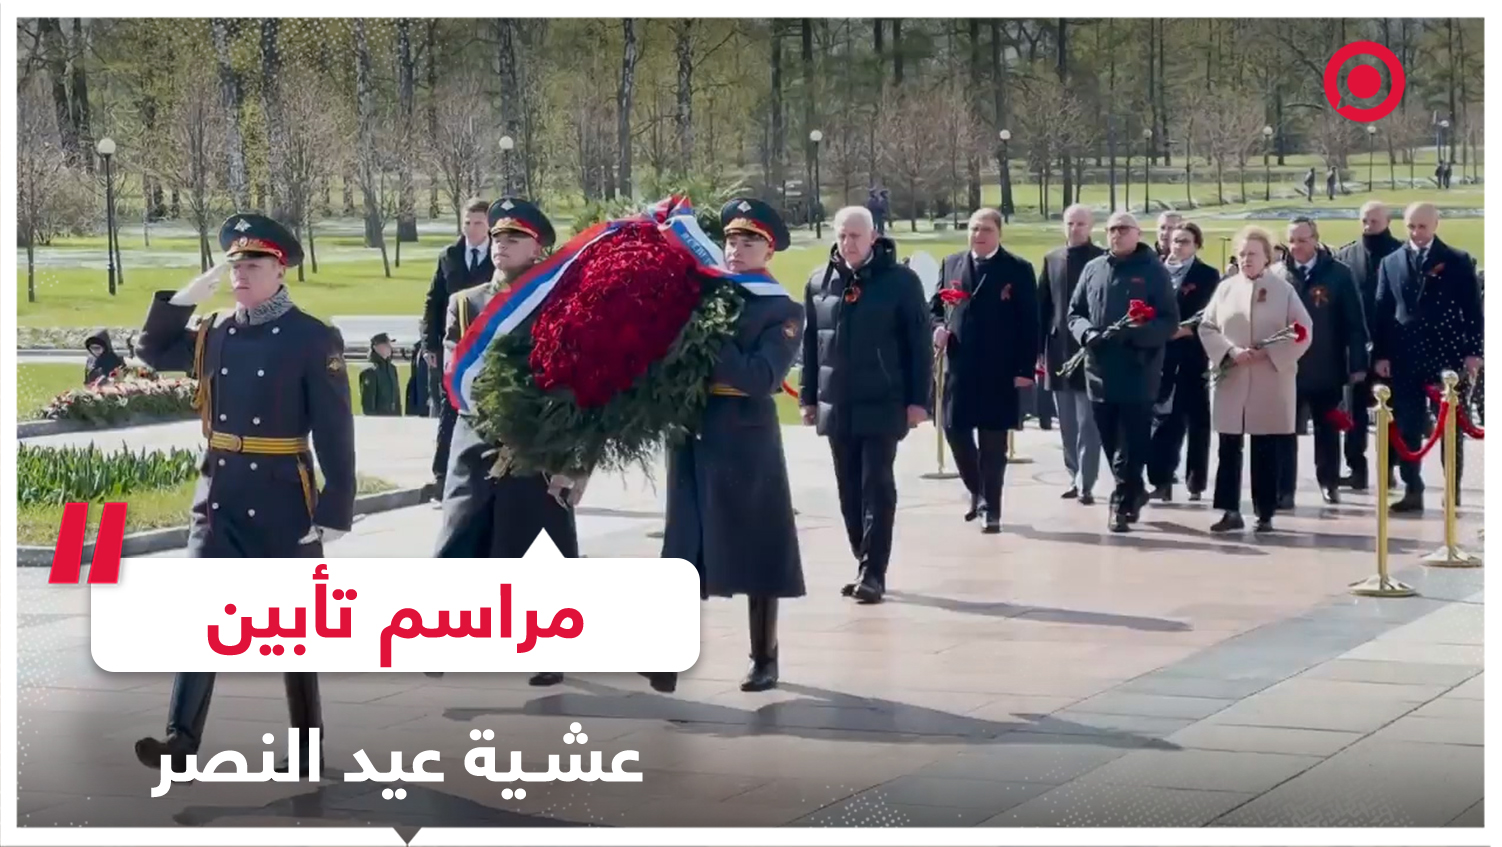 مراسم تأبين مهيبة أقيمت عشية يوم النصر بمقبرة بيسكاريفسكوي في سان بطرسبورغ